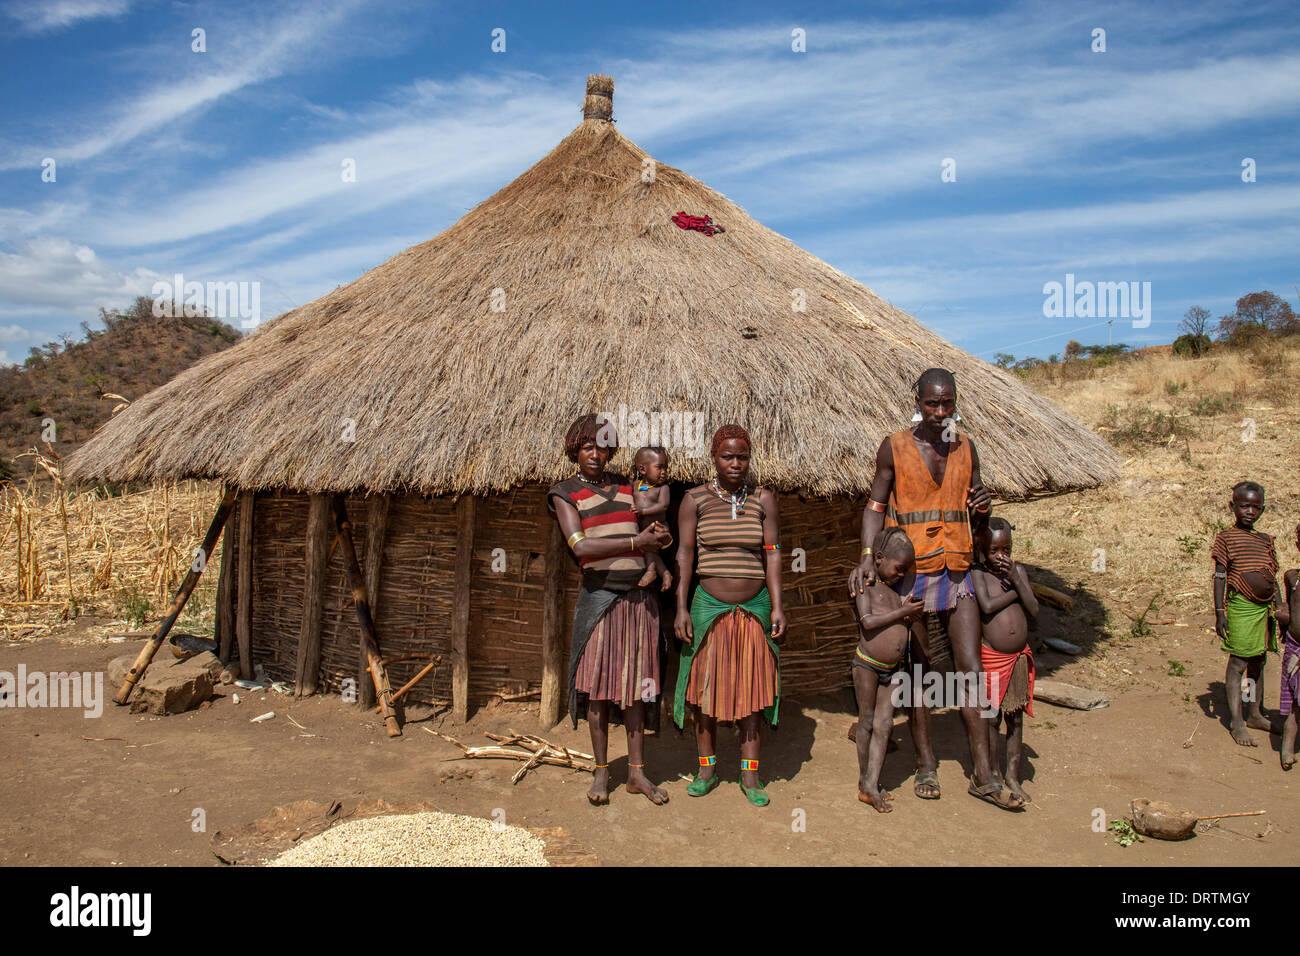 La famille tribu Banna en dehors de leur domicile, vallée de l'Omo, Ethiopie Banque D'Images